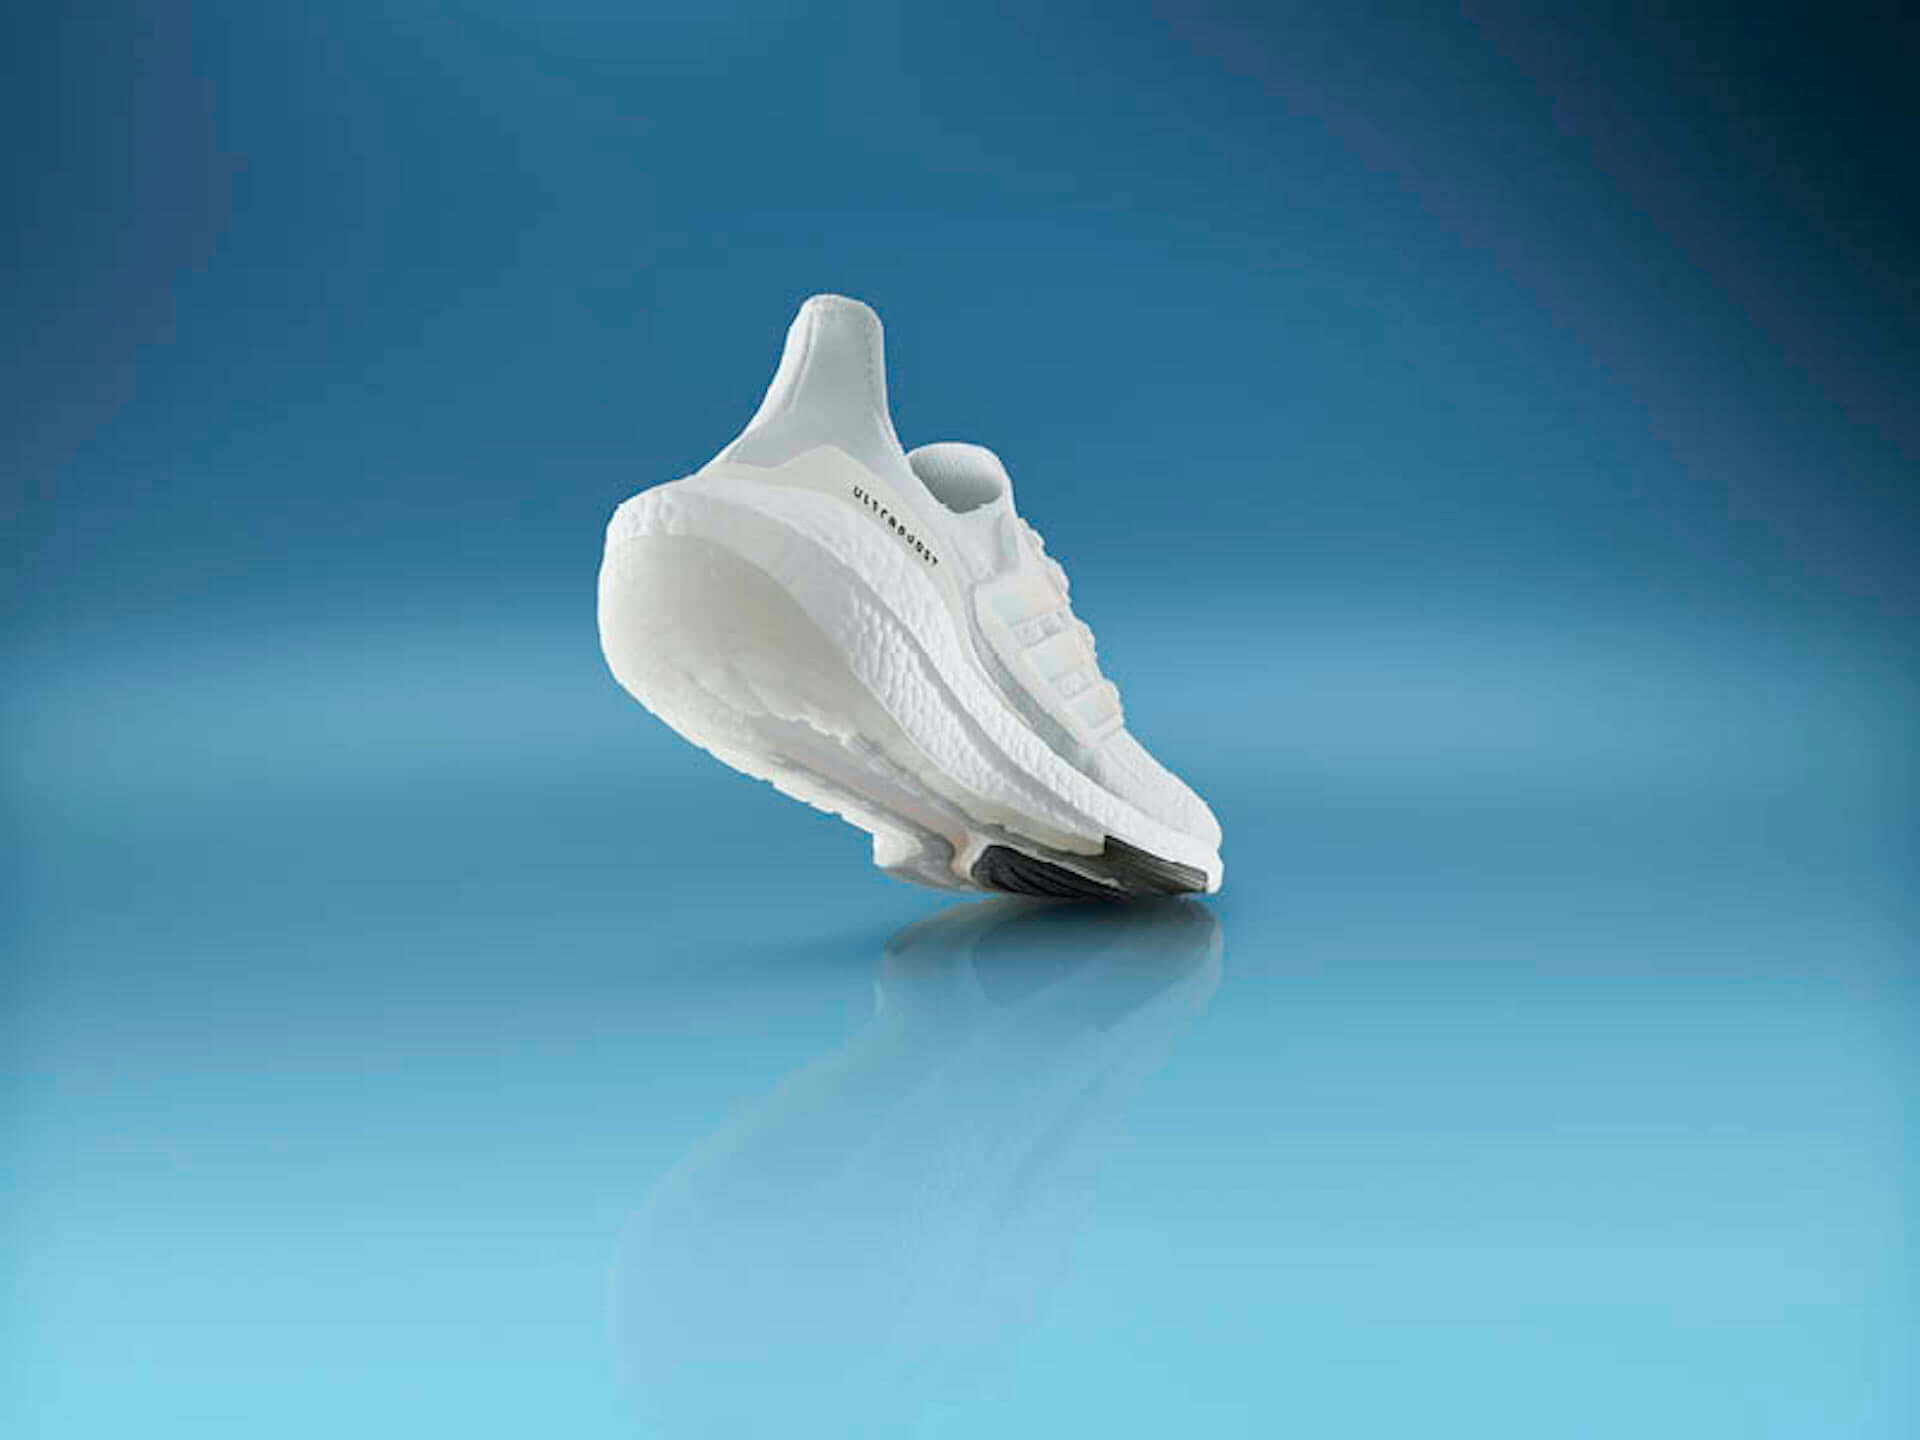 アディダスを象徴するプレミアムランニングシューズが進化！軽量性・クッショニングに優れた最新モデル『Ultraboost 21』が登場 lf210115_adidas_9-1920x1440